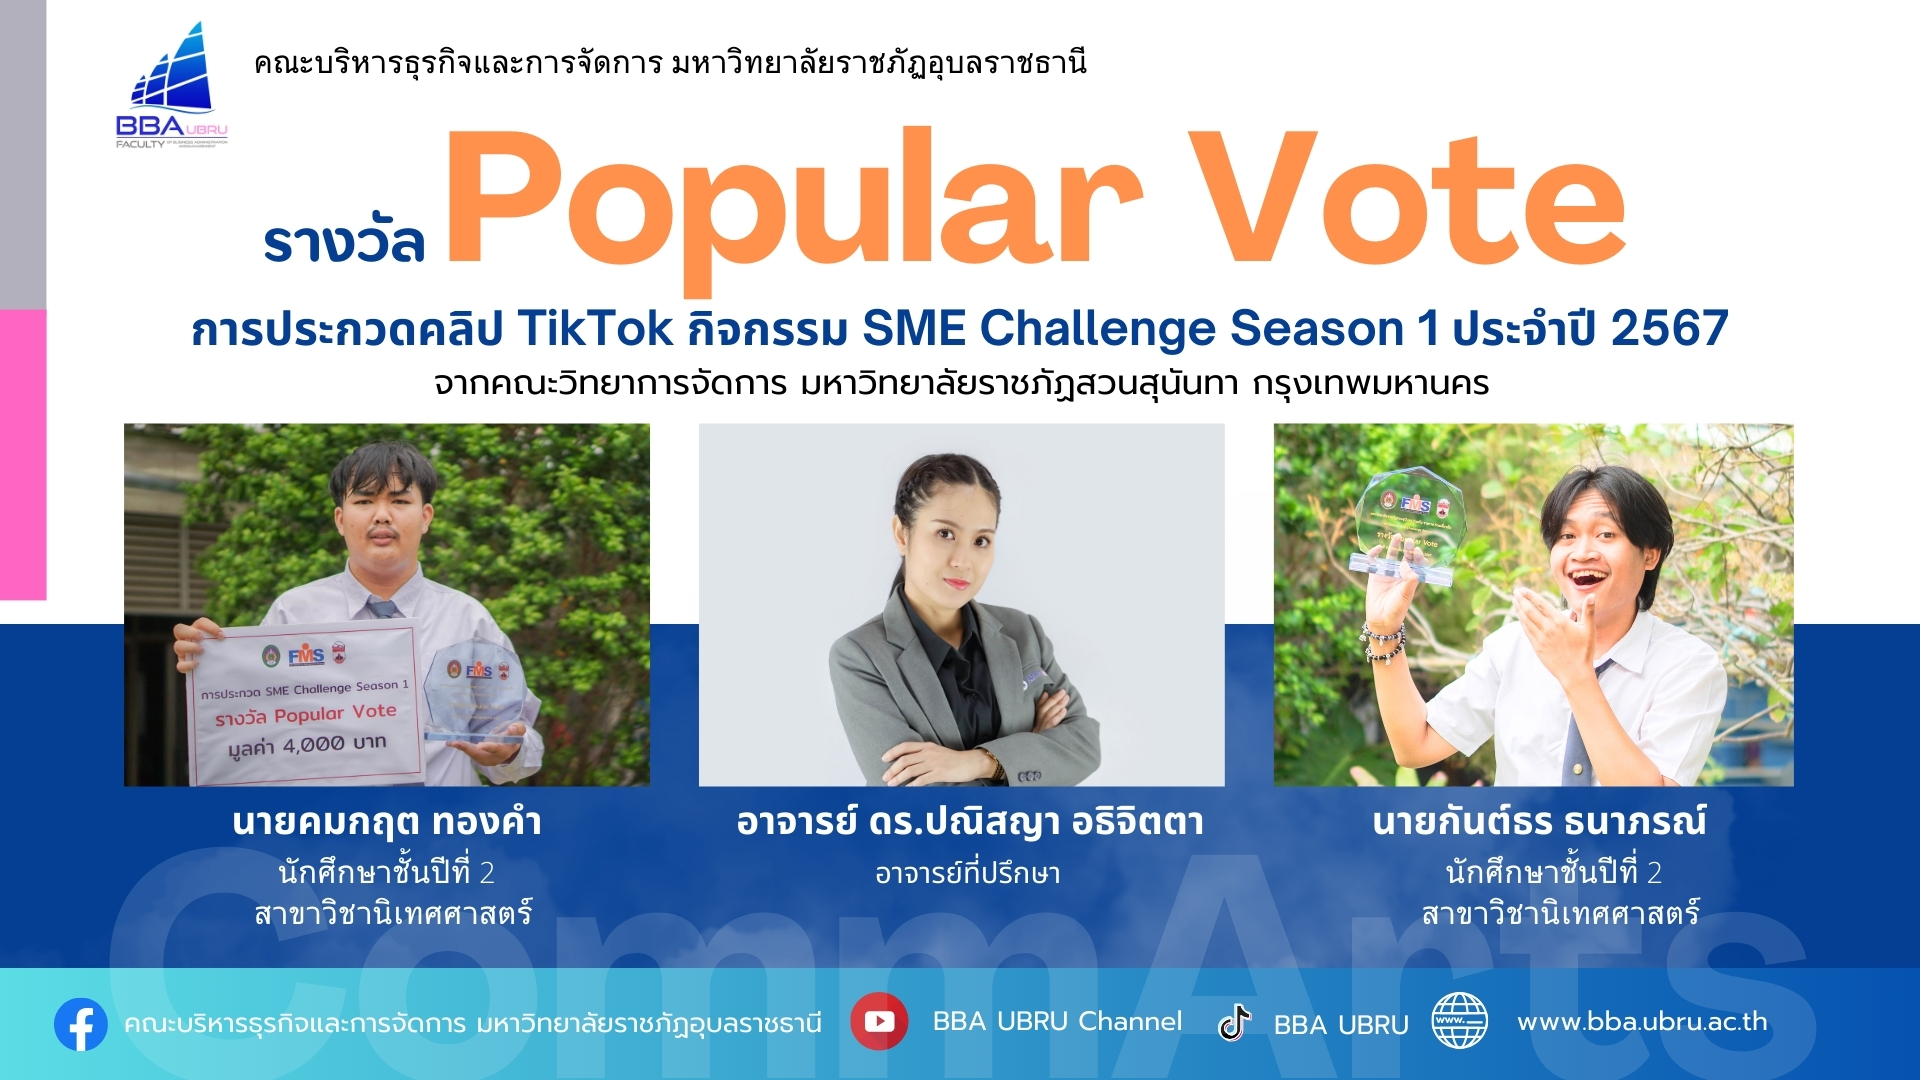 รางวัล Popular Vote การประกวดคลิป TikTok กิจกรรม SME Challenge Season 1 ประจำปี 2567 จากคณะวิทยาการจัดการ มหาวิทยาลัยราชภัฏสวนสุนันทา กรุงเทพมหานคร